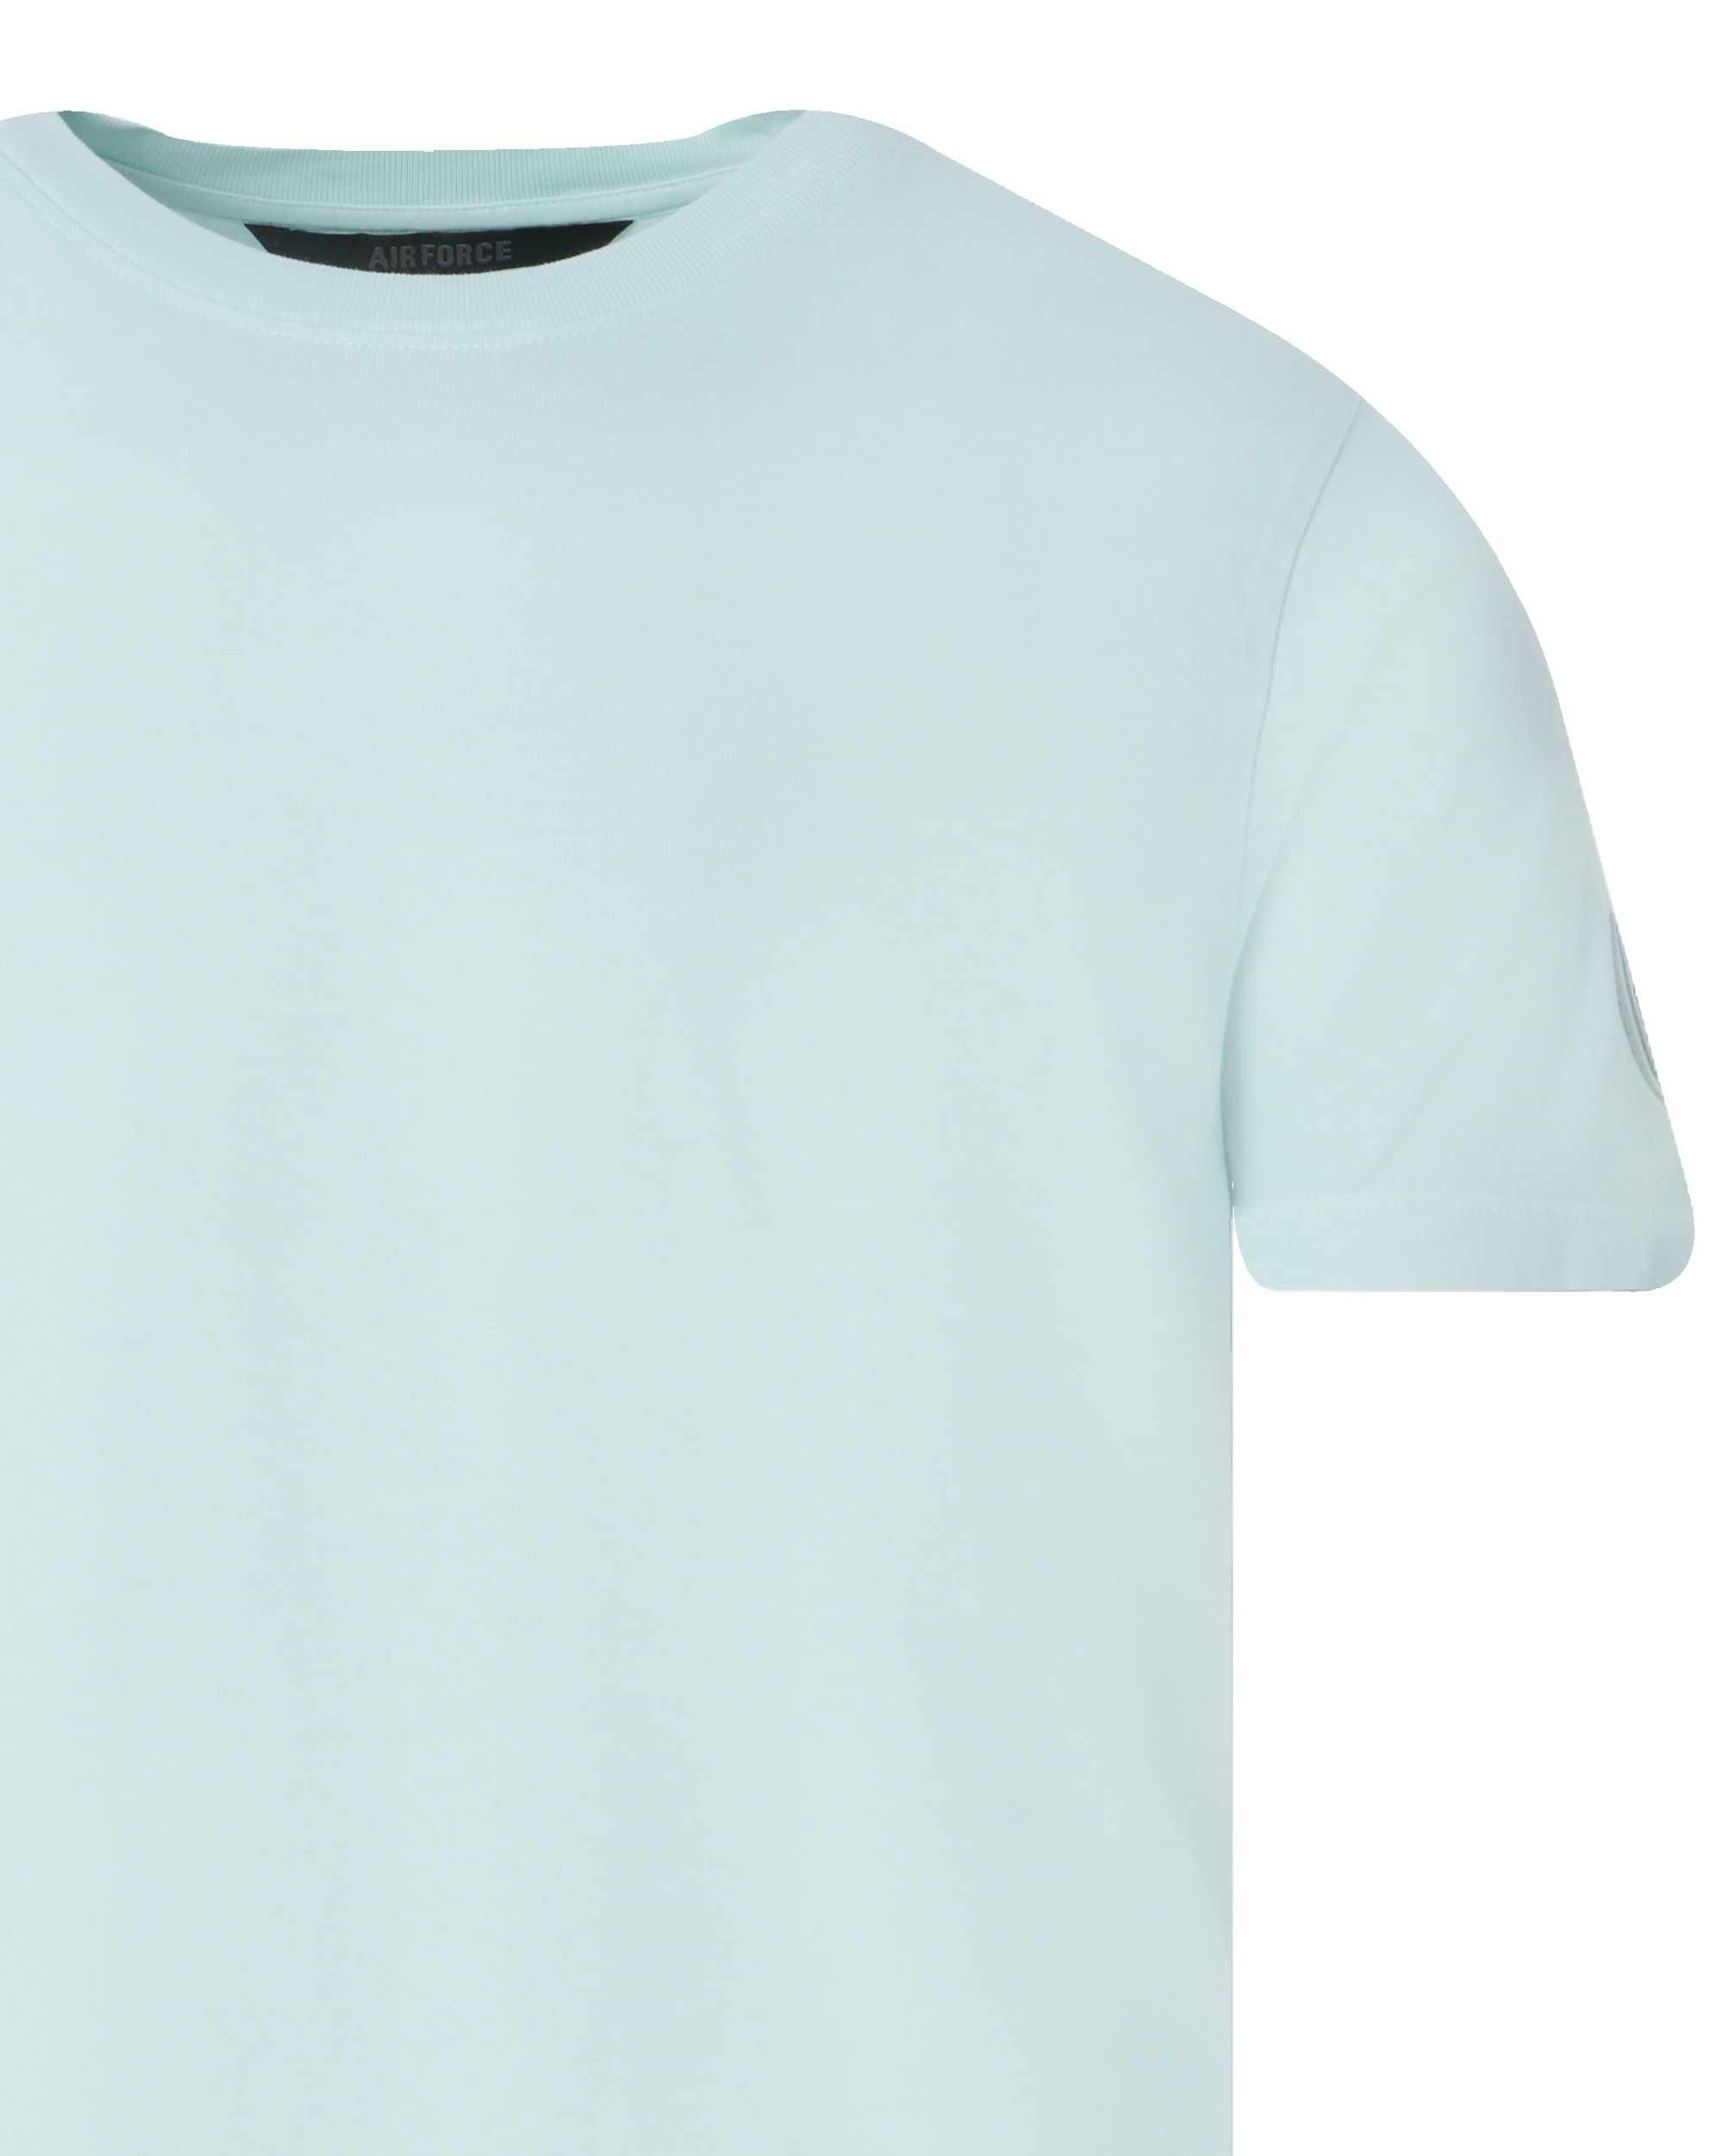 Airforce T-shirt KM Licht blauw 092918-001-L